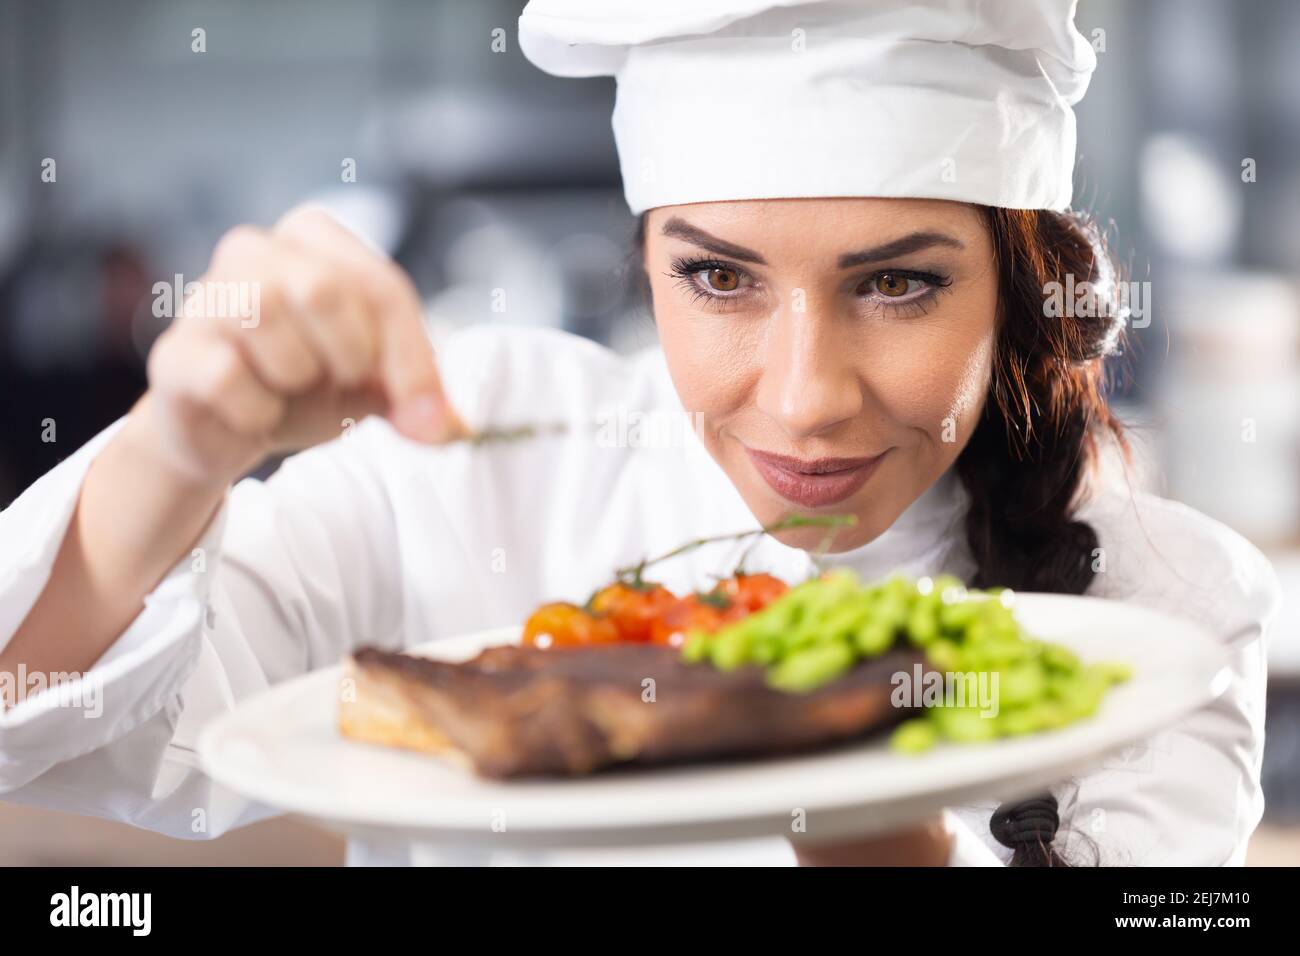 Professionelle Köchin im Hut macht den letzten Schliff auf einem frisch zubereiteten Steak vor dem Servieren. Stockfoto